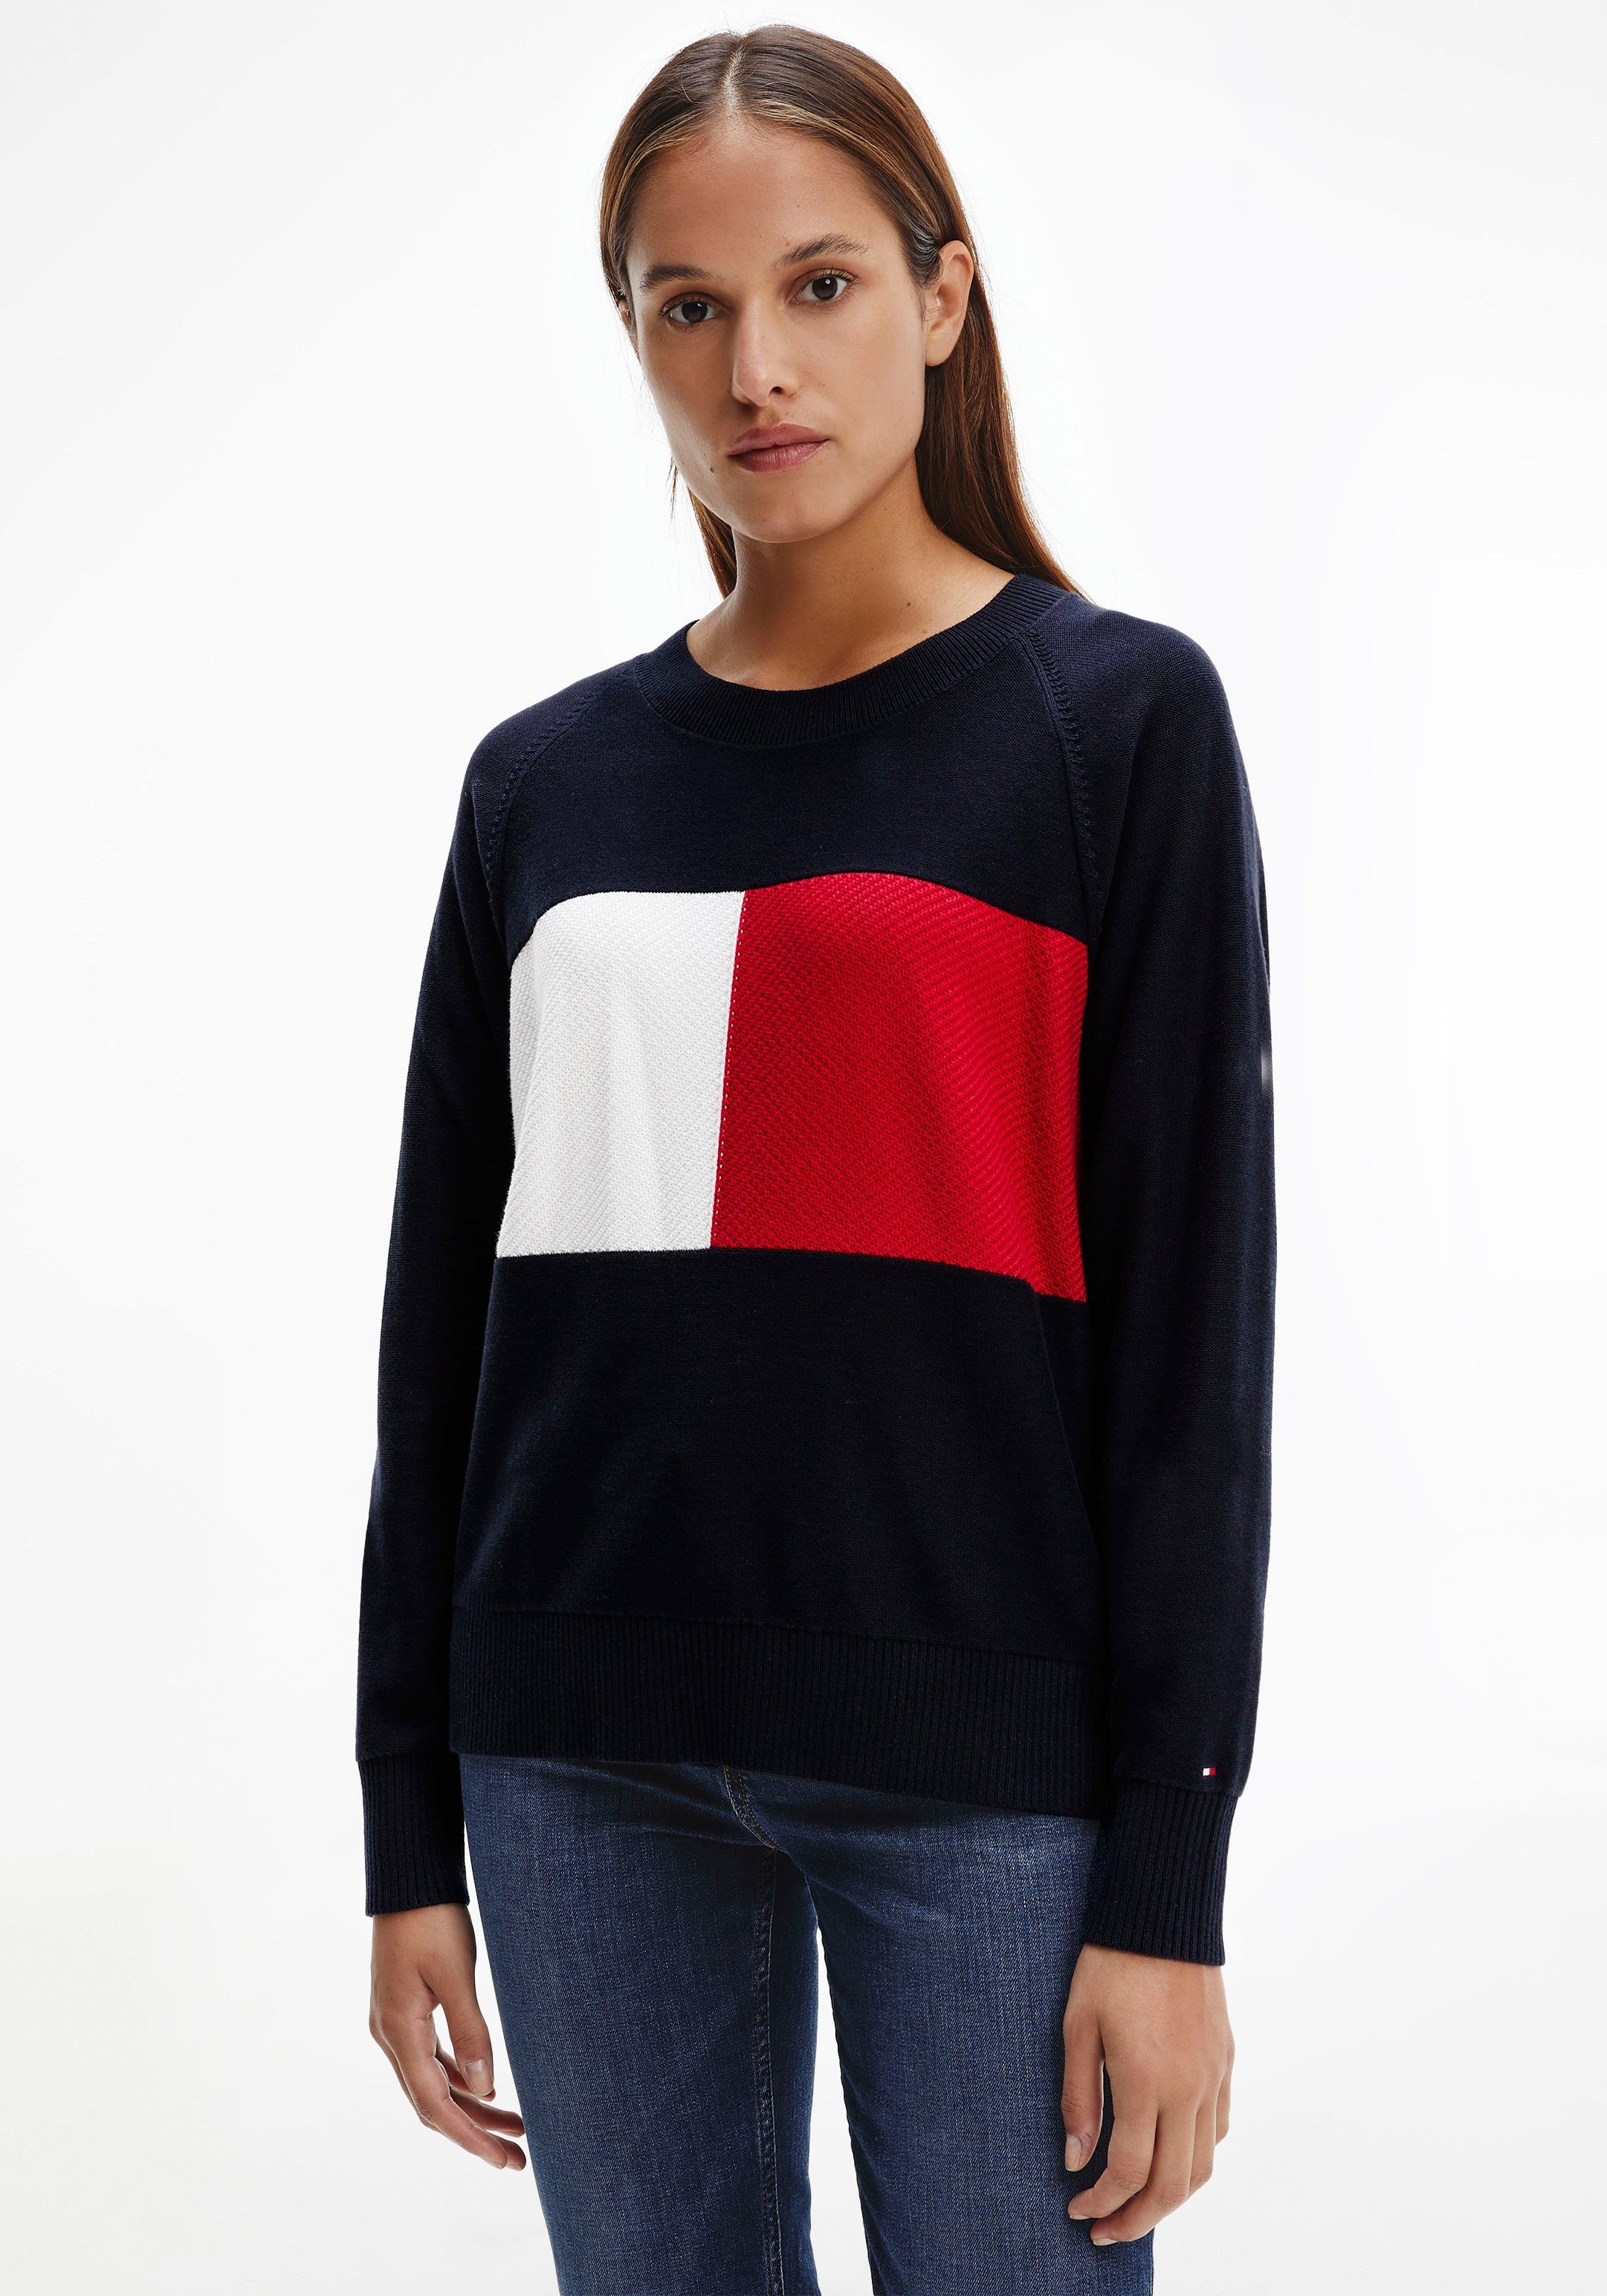 Günstiger Tommy Hilfiger Pullover Damen online kaufen | OTTO